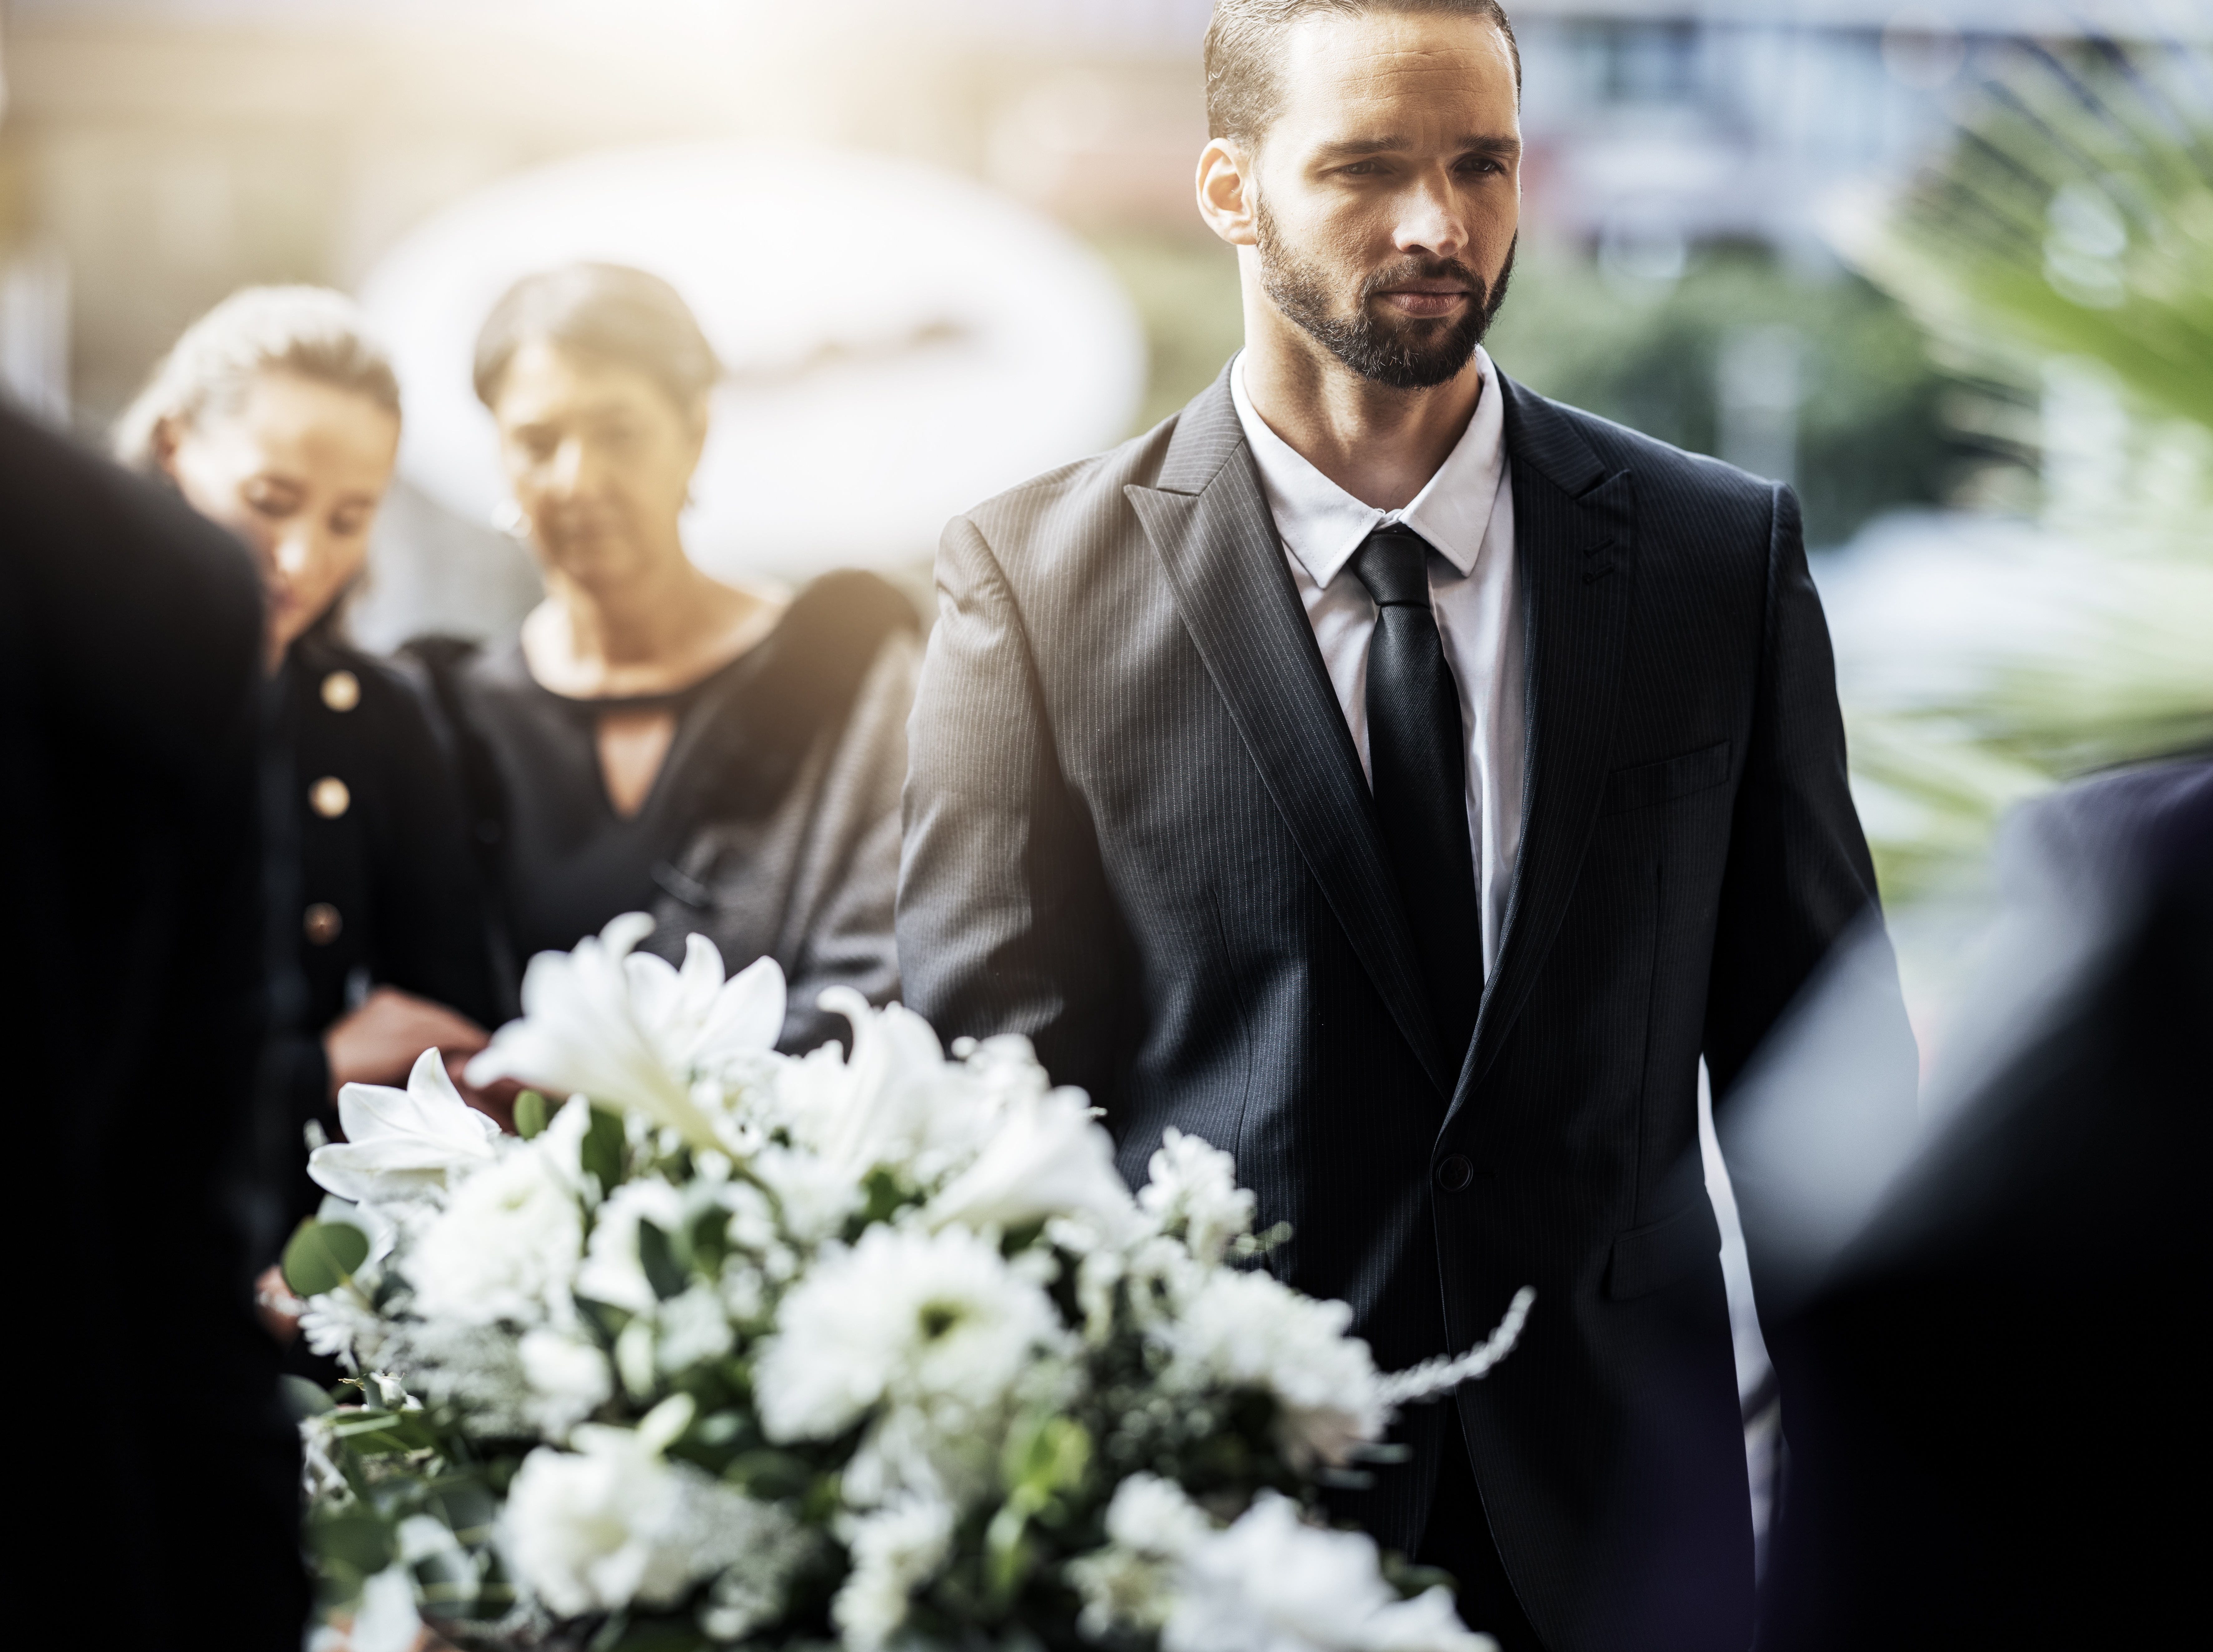 Ein Mann bei einer Beerdigung | Quelle: Shutterstock